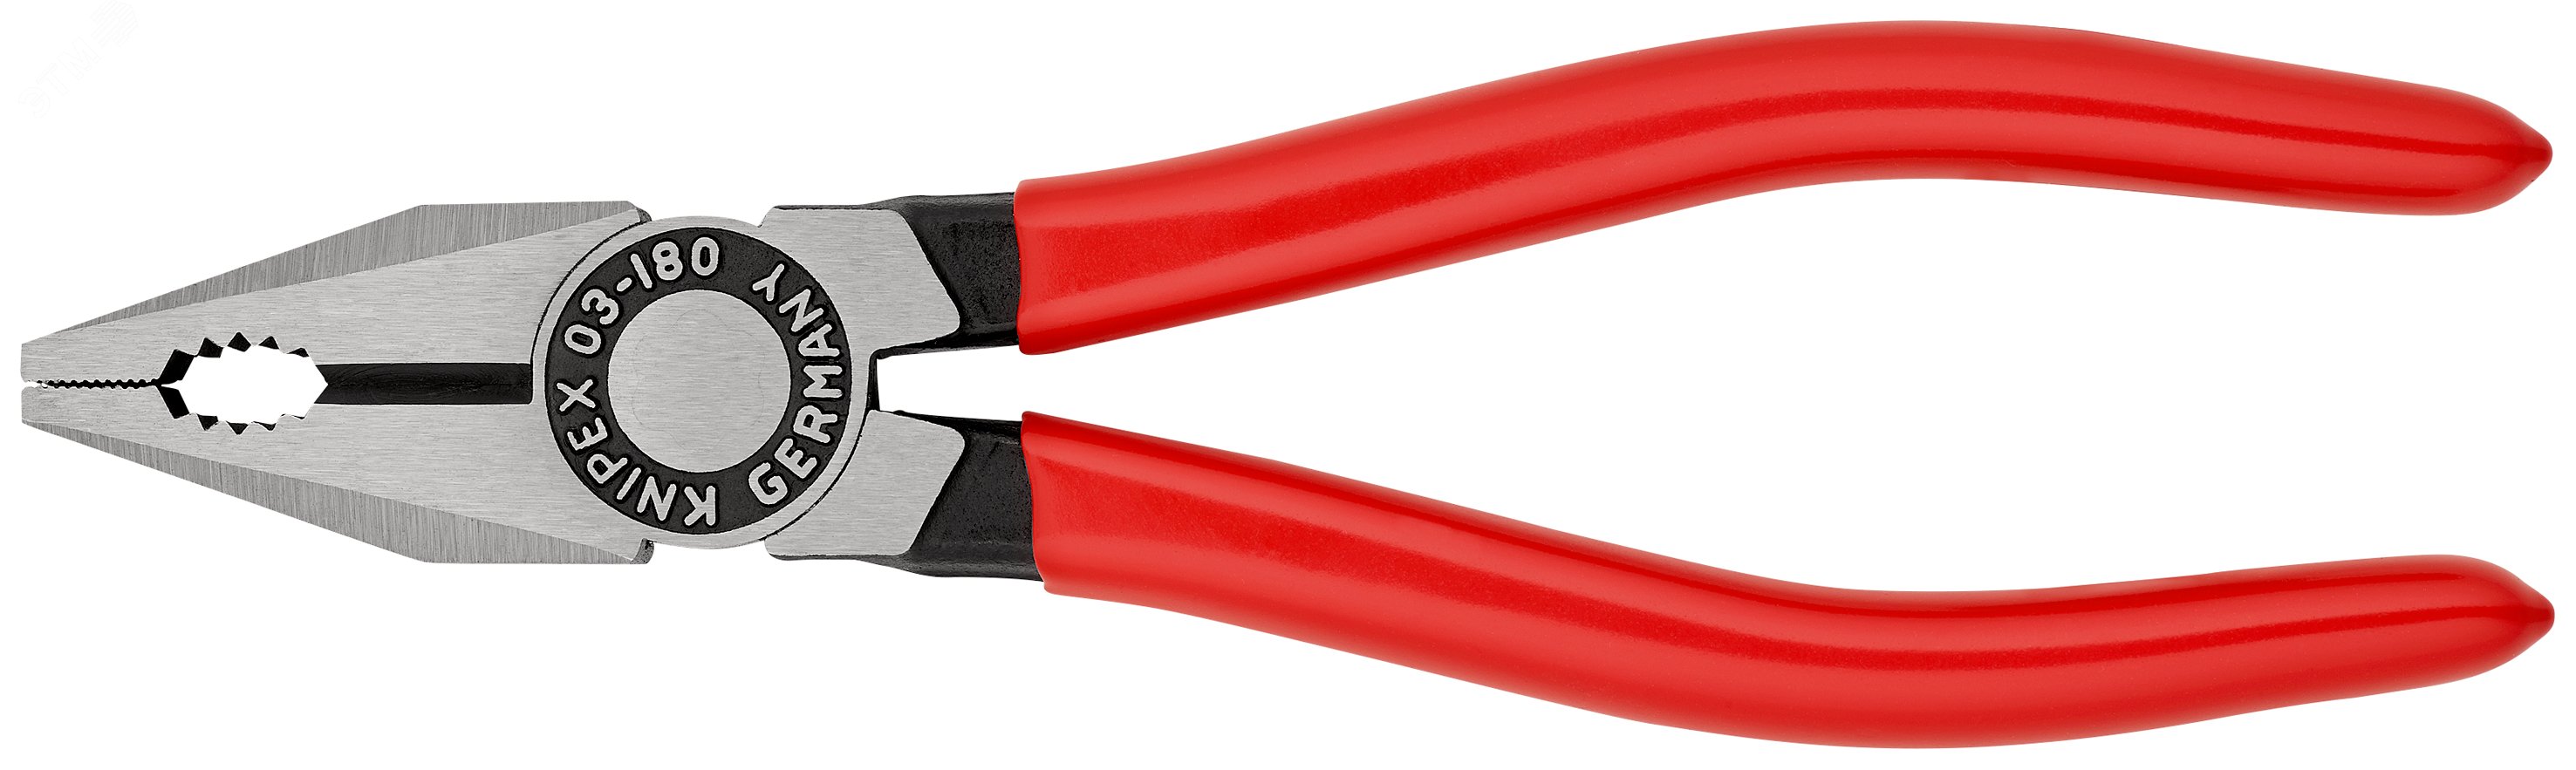 Плоскогубцы комбинированные резка - проволока средней твердости 34мм твердая проволока 22мм кабель 12мм (16мм) L=180мм обливные рукоятки блистер цвет черный KN-0301180SB KNIPEX - превью 3